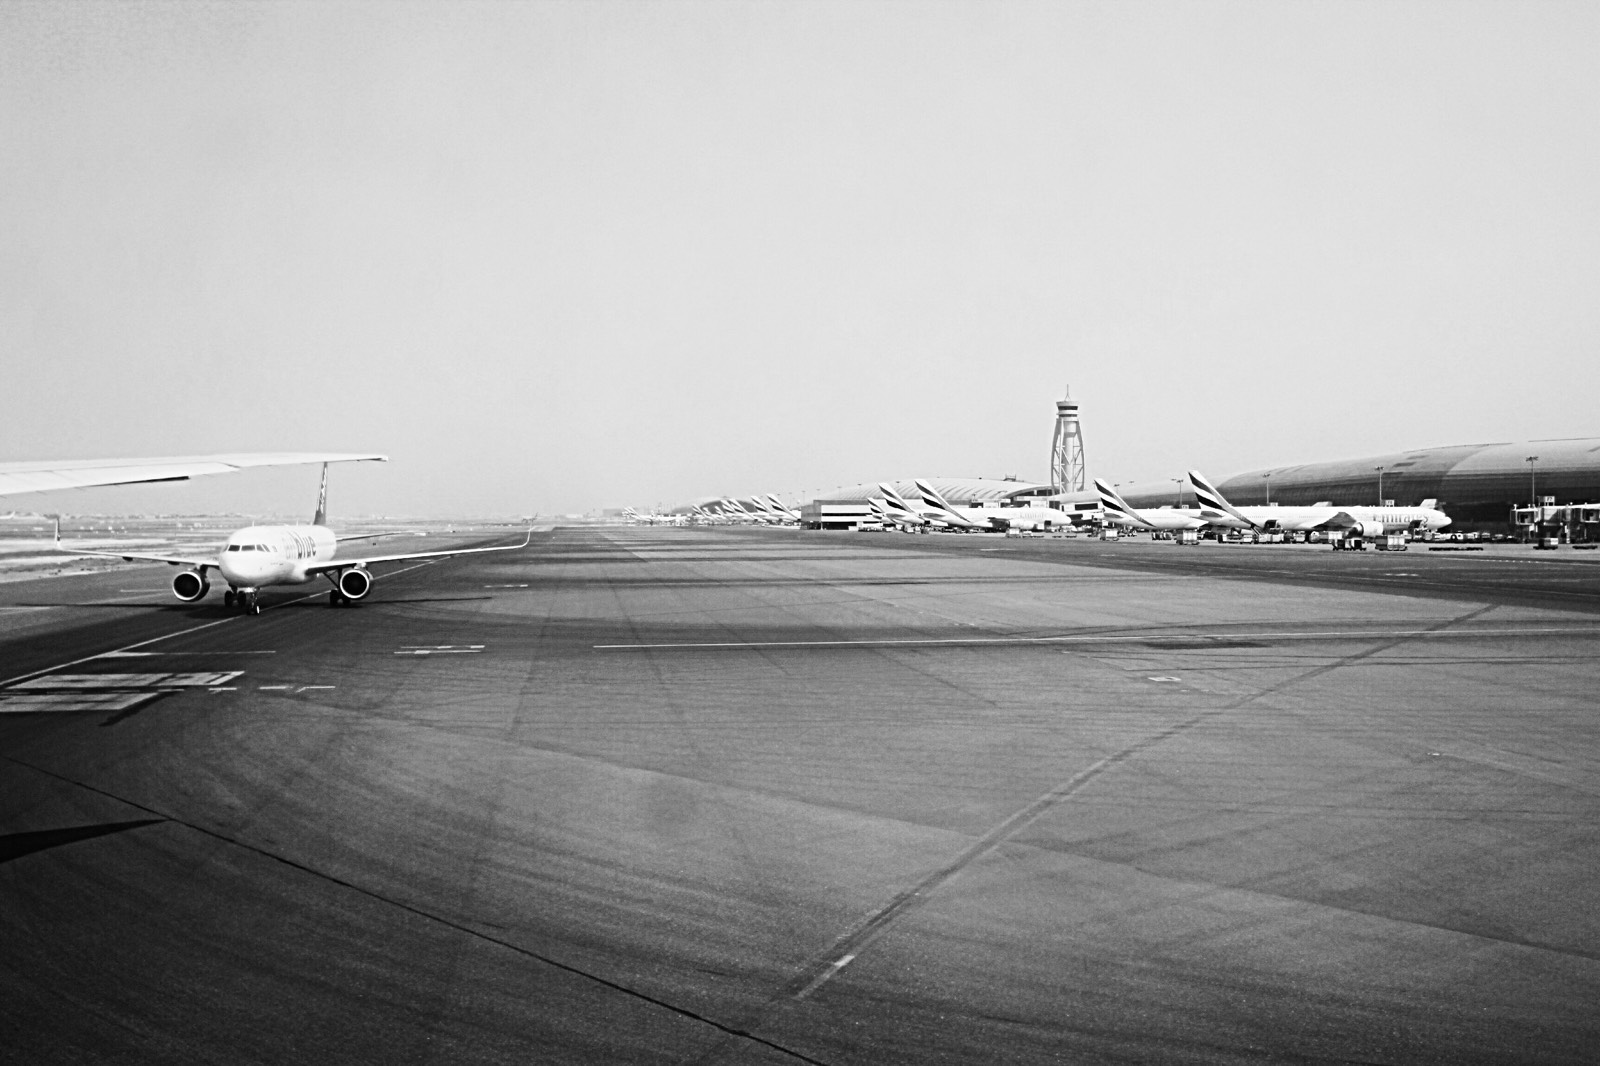 很大 很豪 很杜拜整个机场似乎只看到阿联酋航空 难到其它航空公司都不在